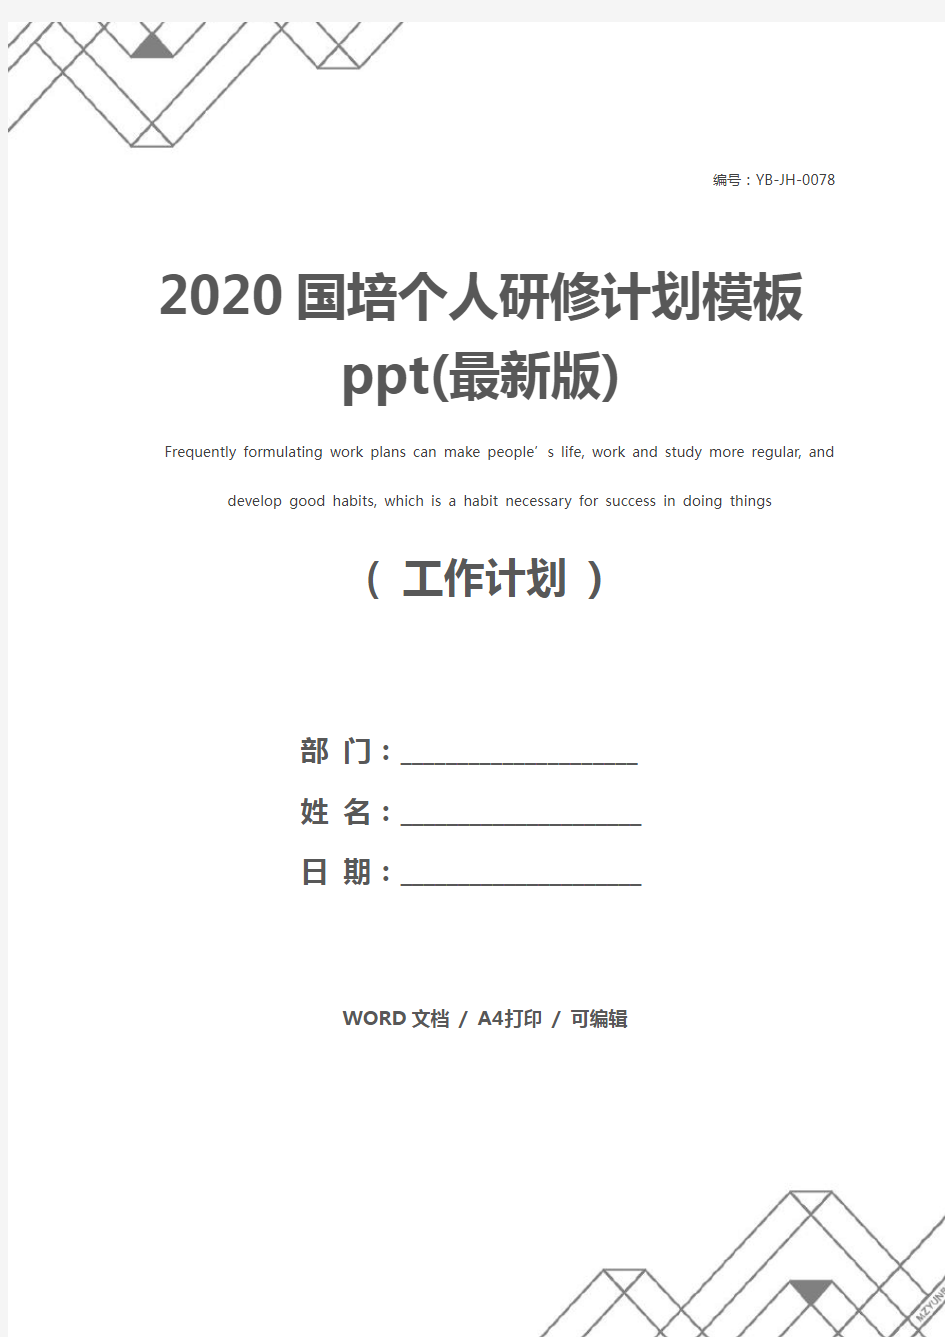 2020国培个人研修计划模板ppt(最新版)